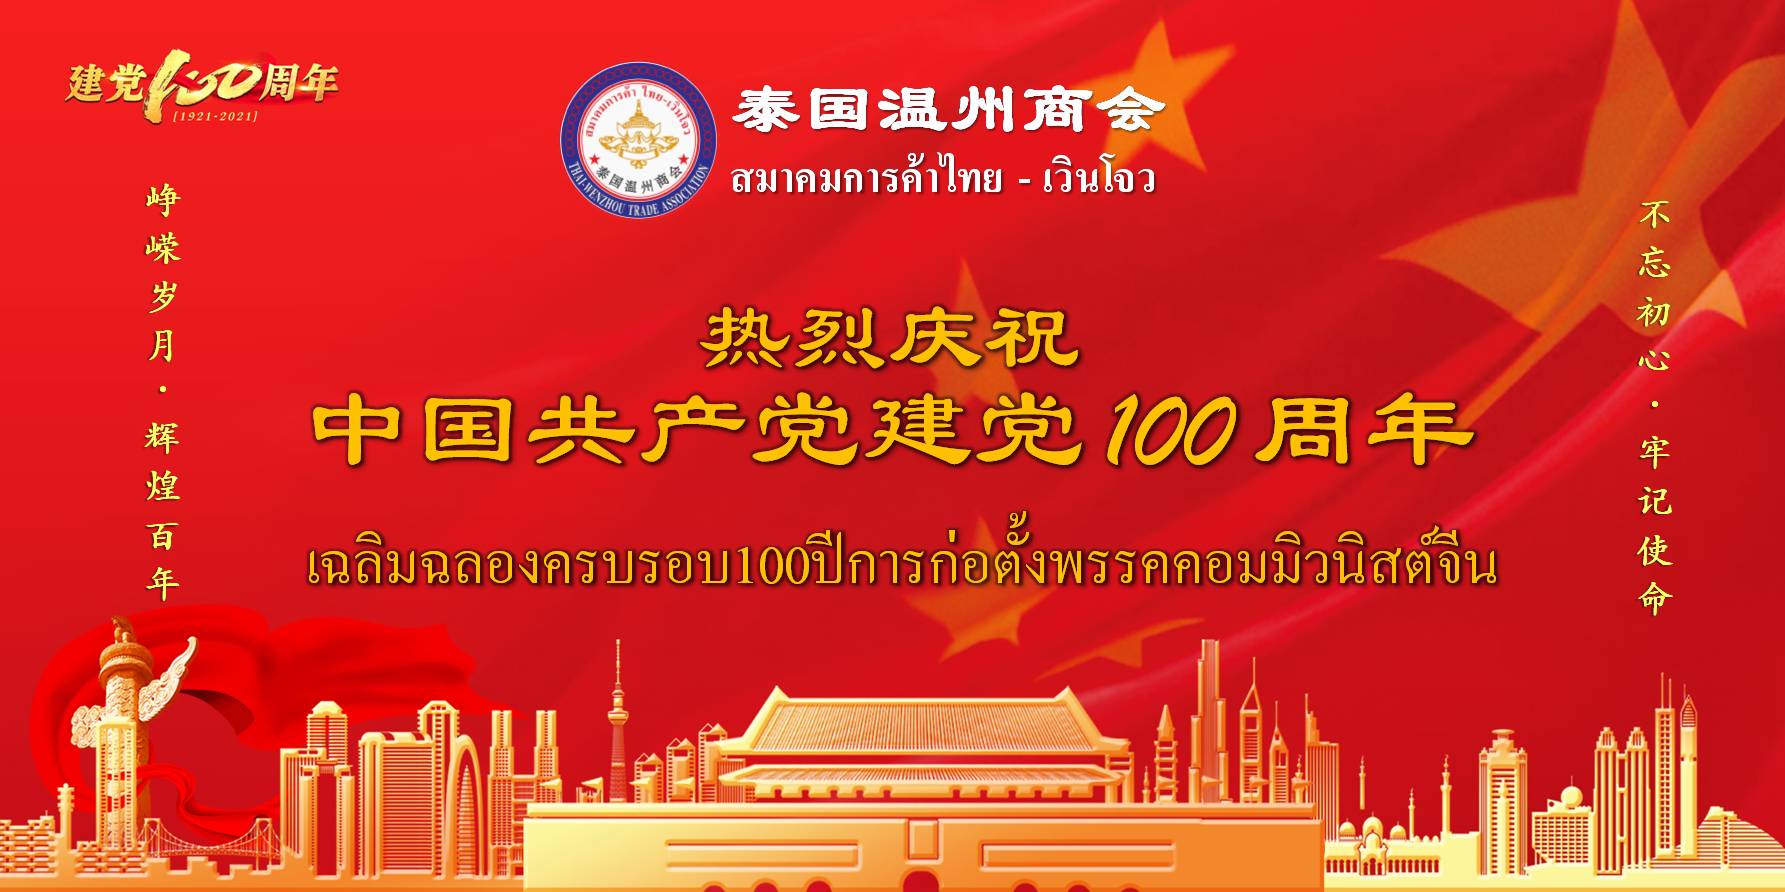 泰国温州商会热烈庆祝中国共产党成立100周年